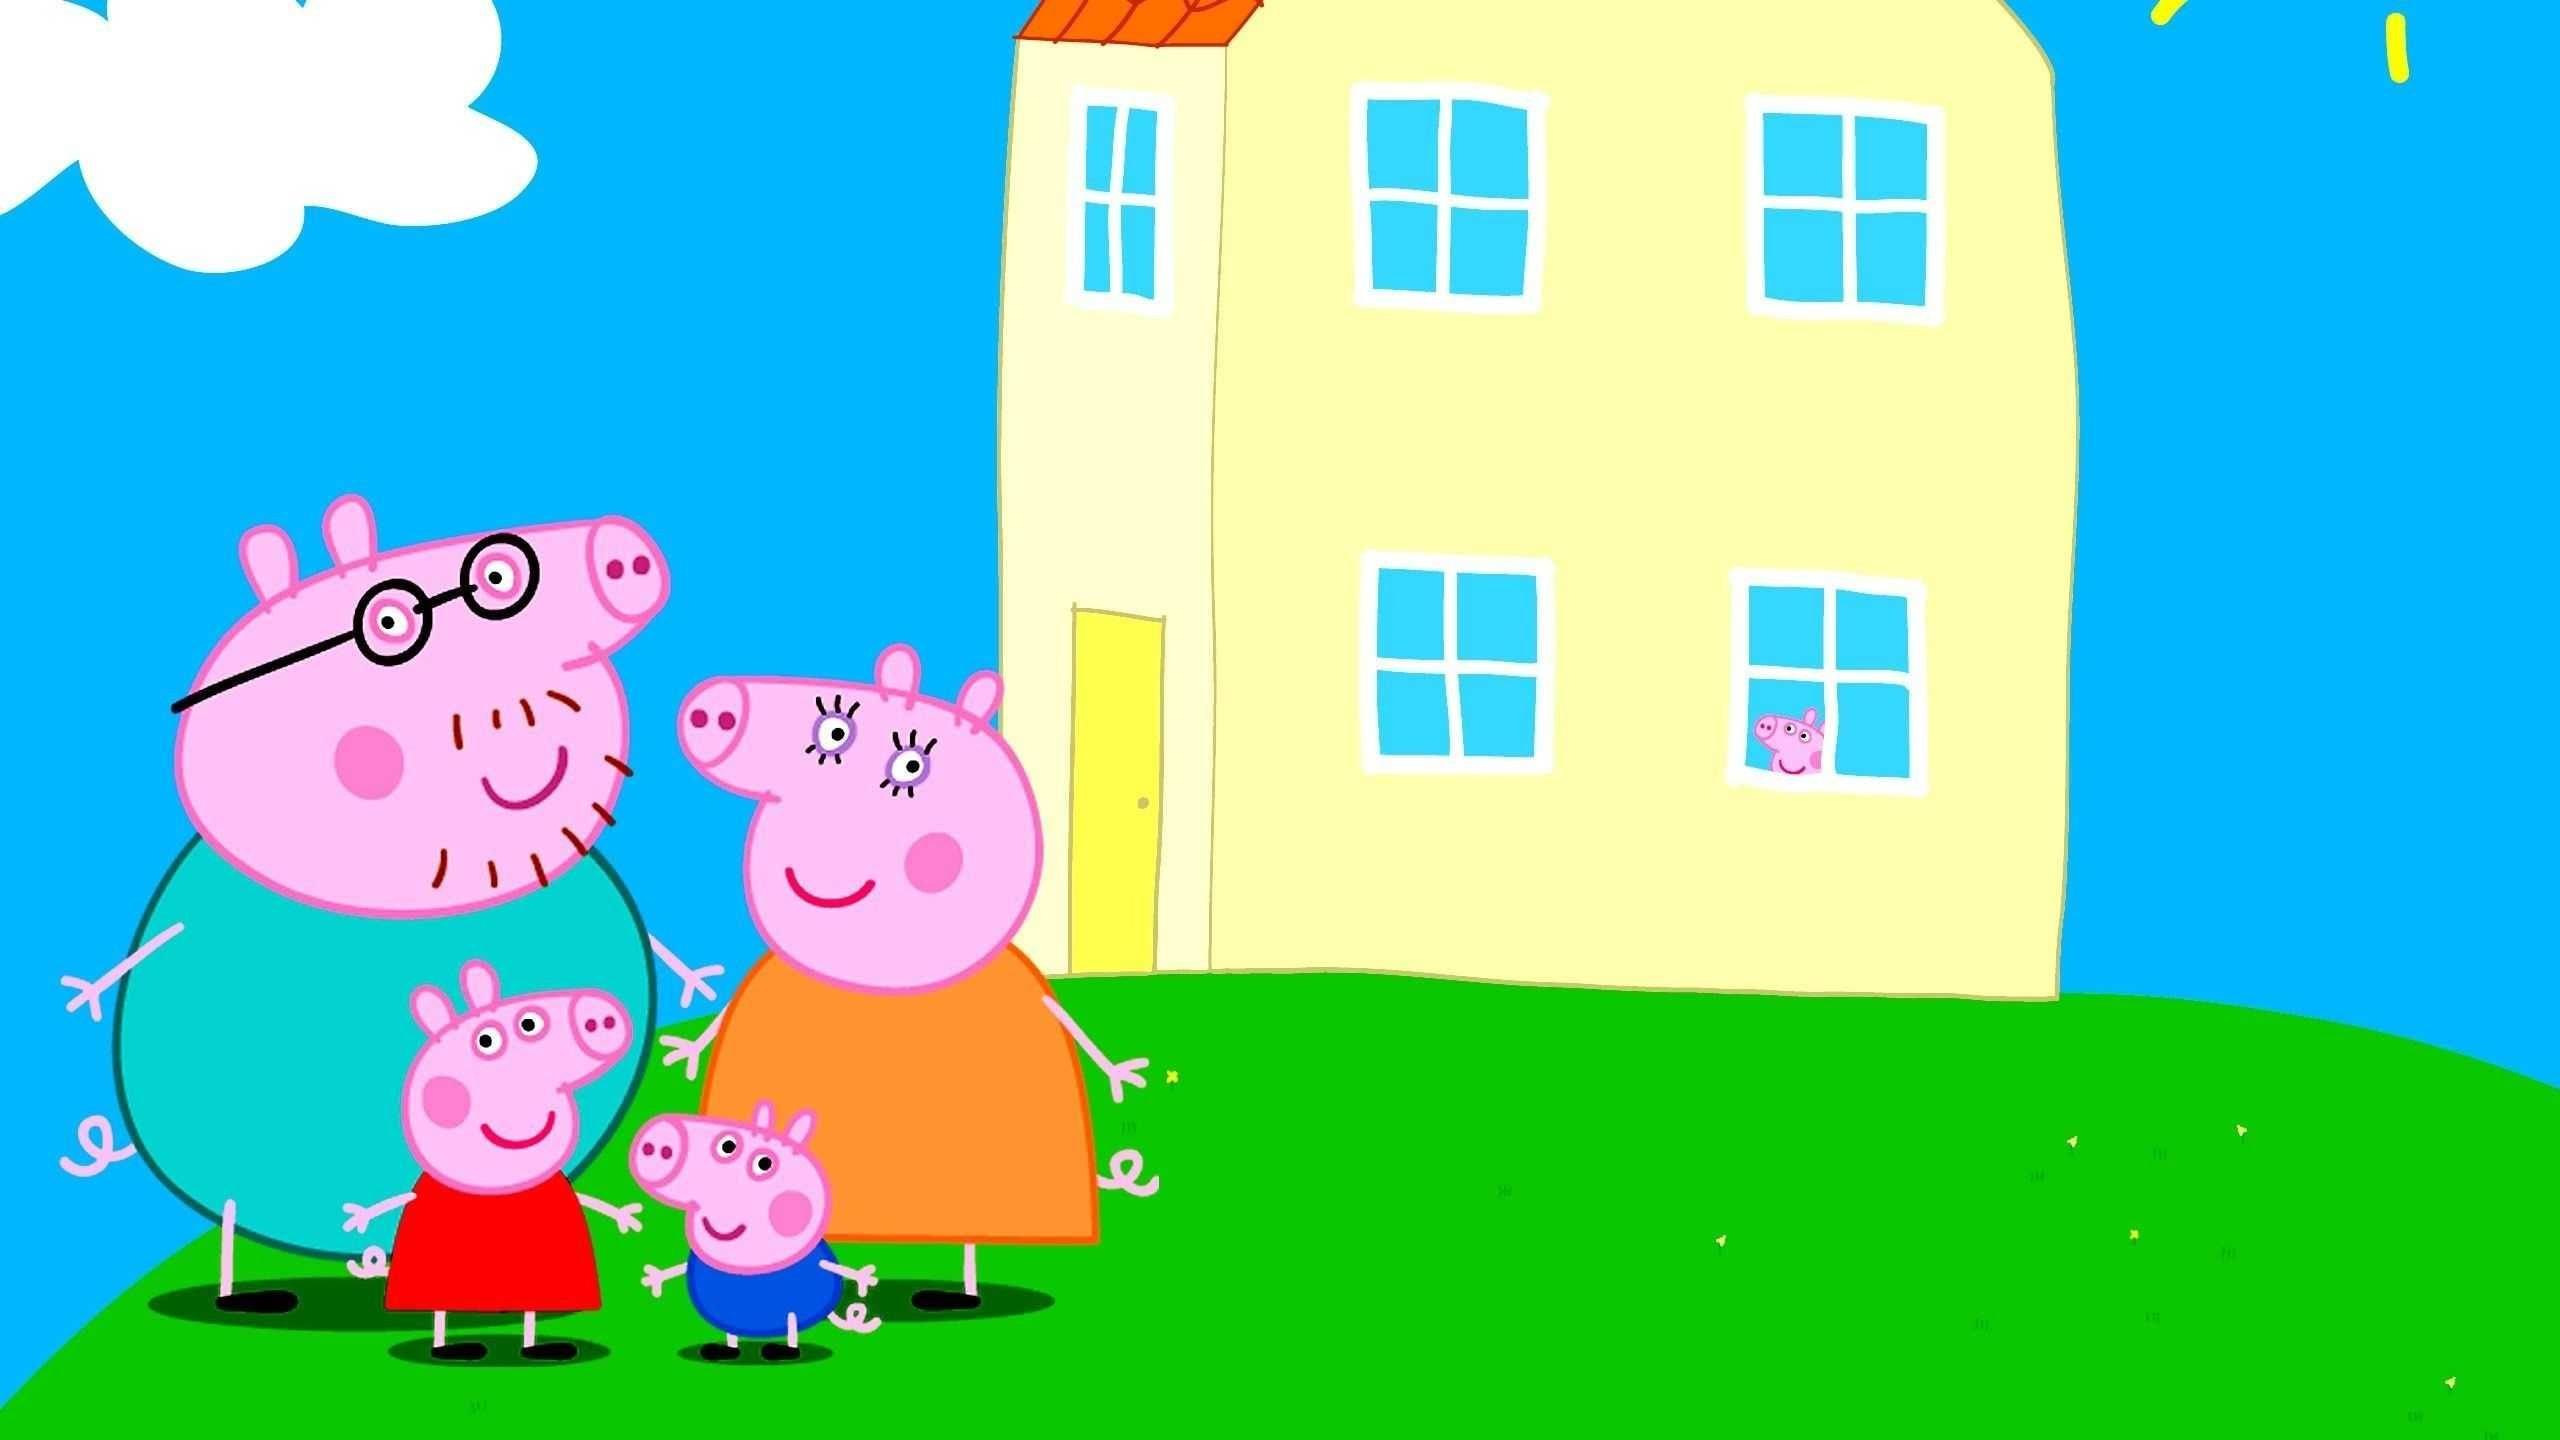 Хрюше поставлена задача отсканировать портрет свинки пепы. Свинка Пеппа и её семья. Свинка Пеппа её сьмья. Пеппа Пиг дом в мультике.